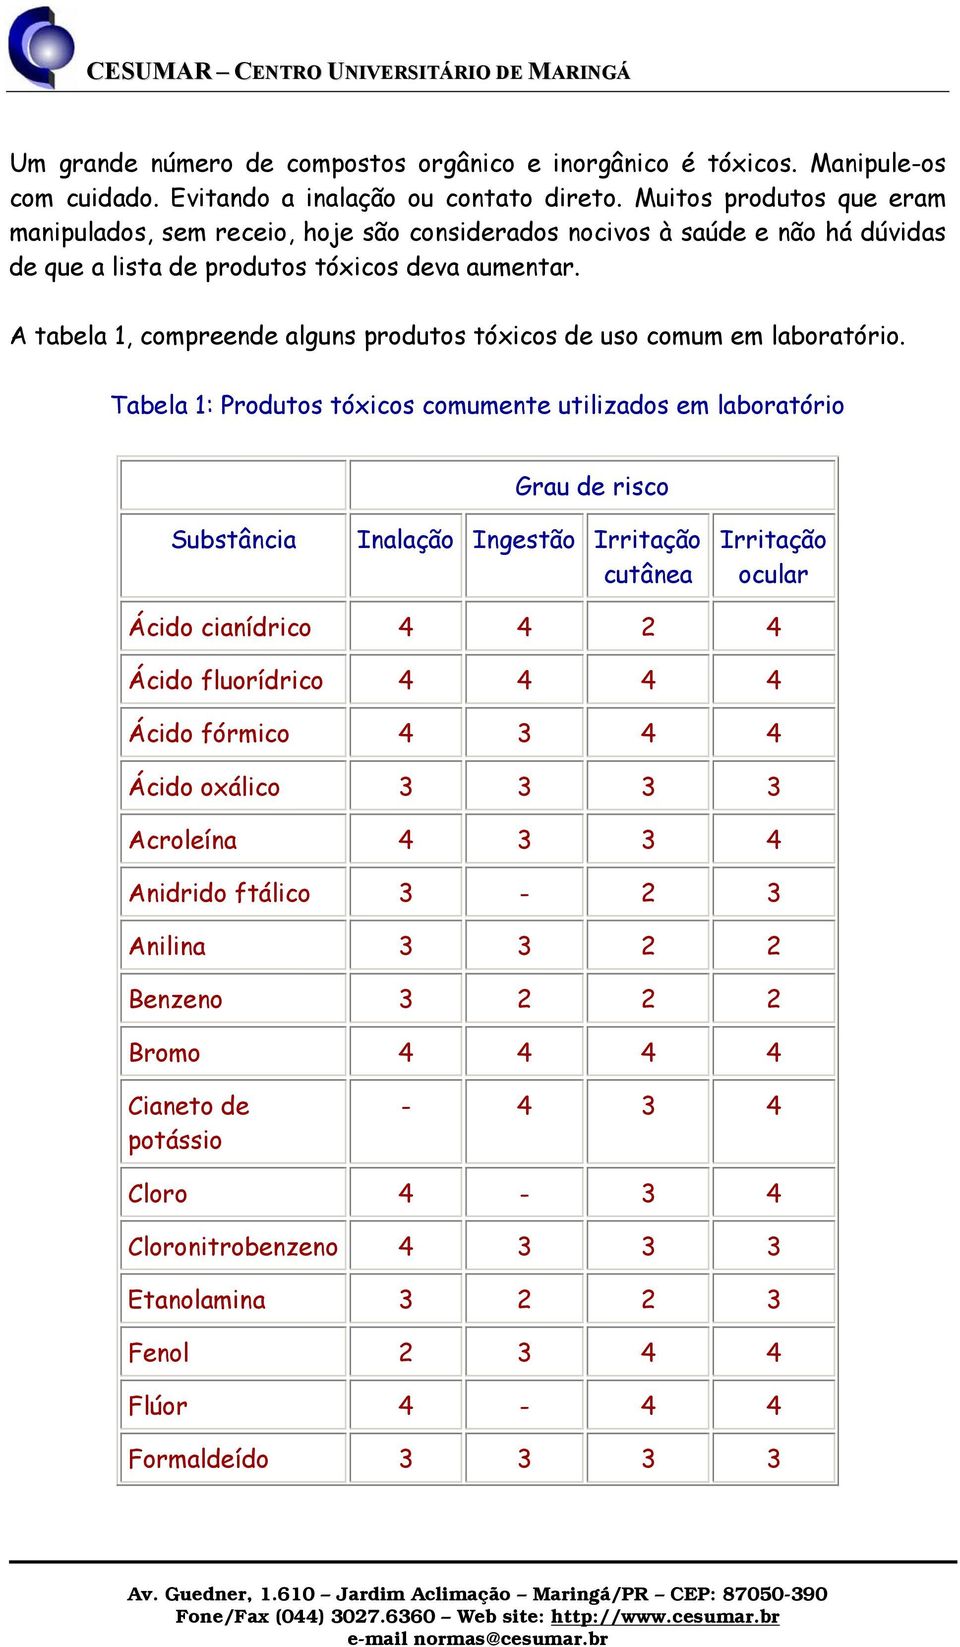 A tabela 1, compreende alguns produtos tóxicos de uso comum em laboratório.